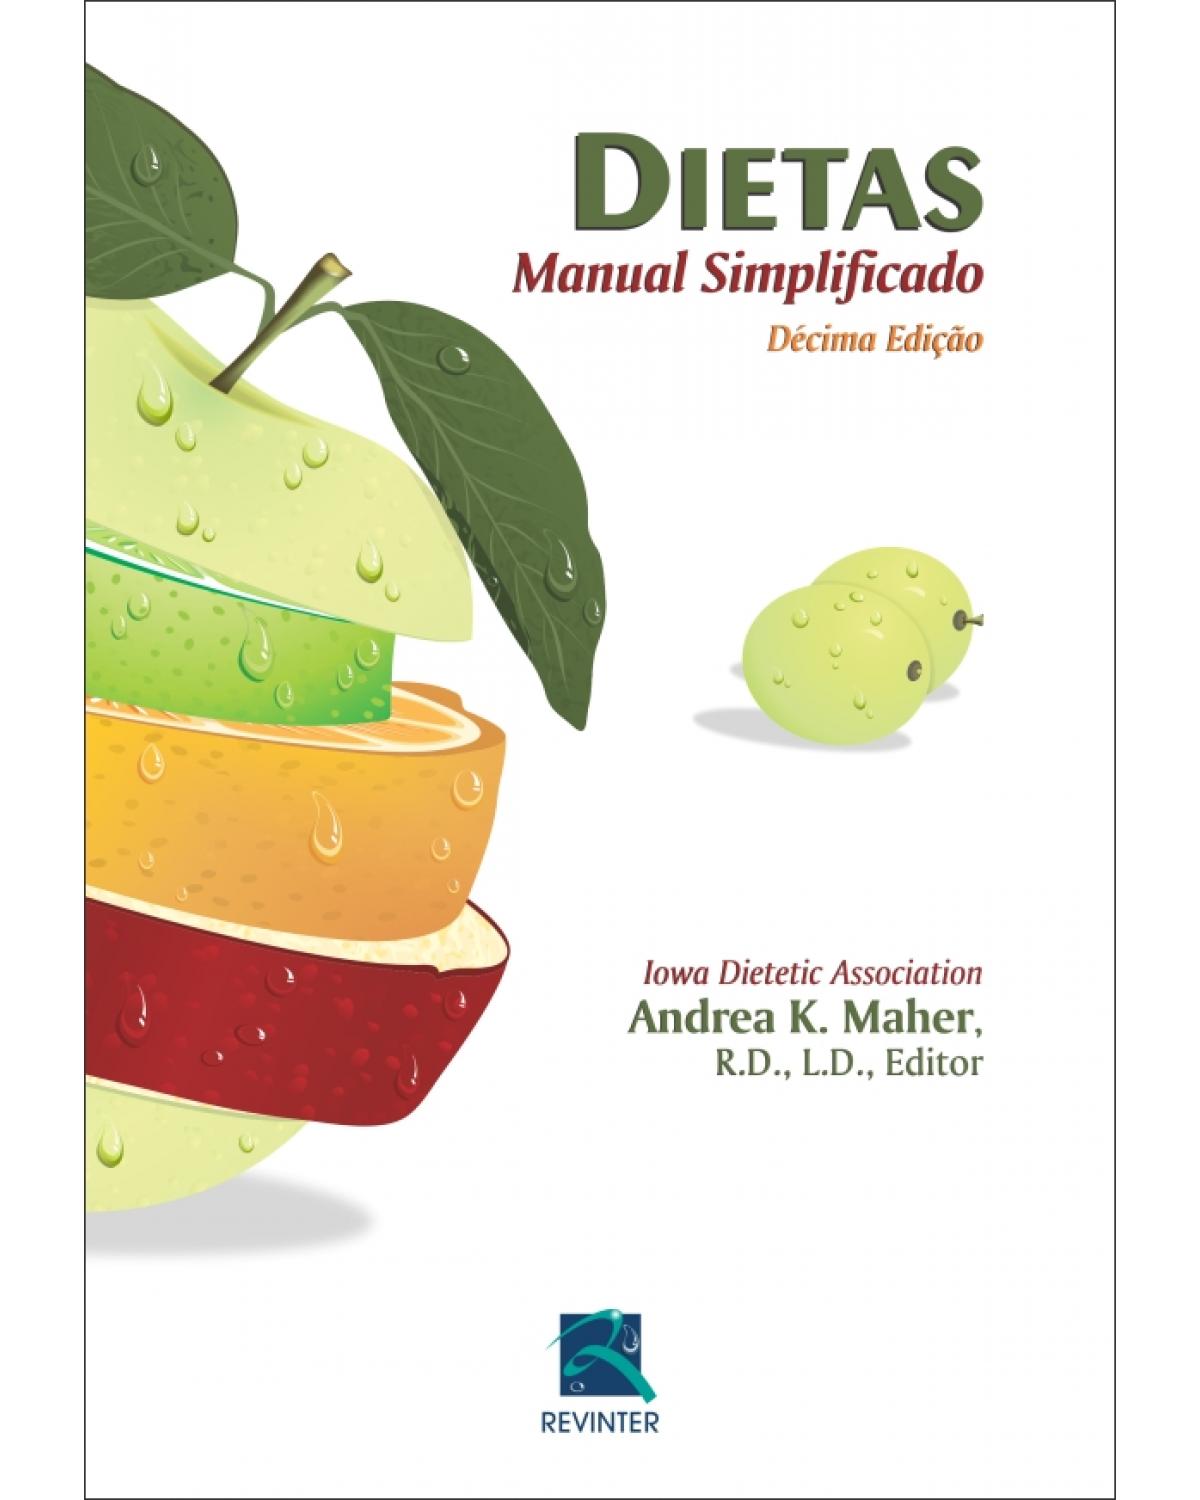 Dietas - manual simplificado - 10ª Edição | 2011